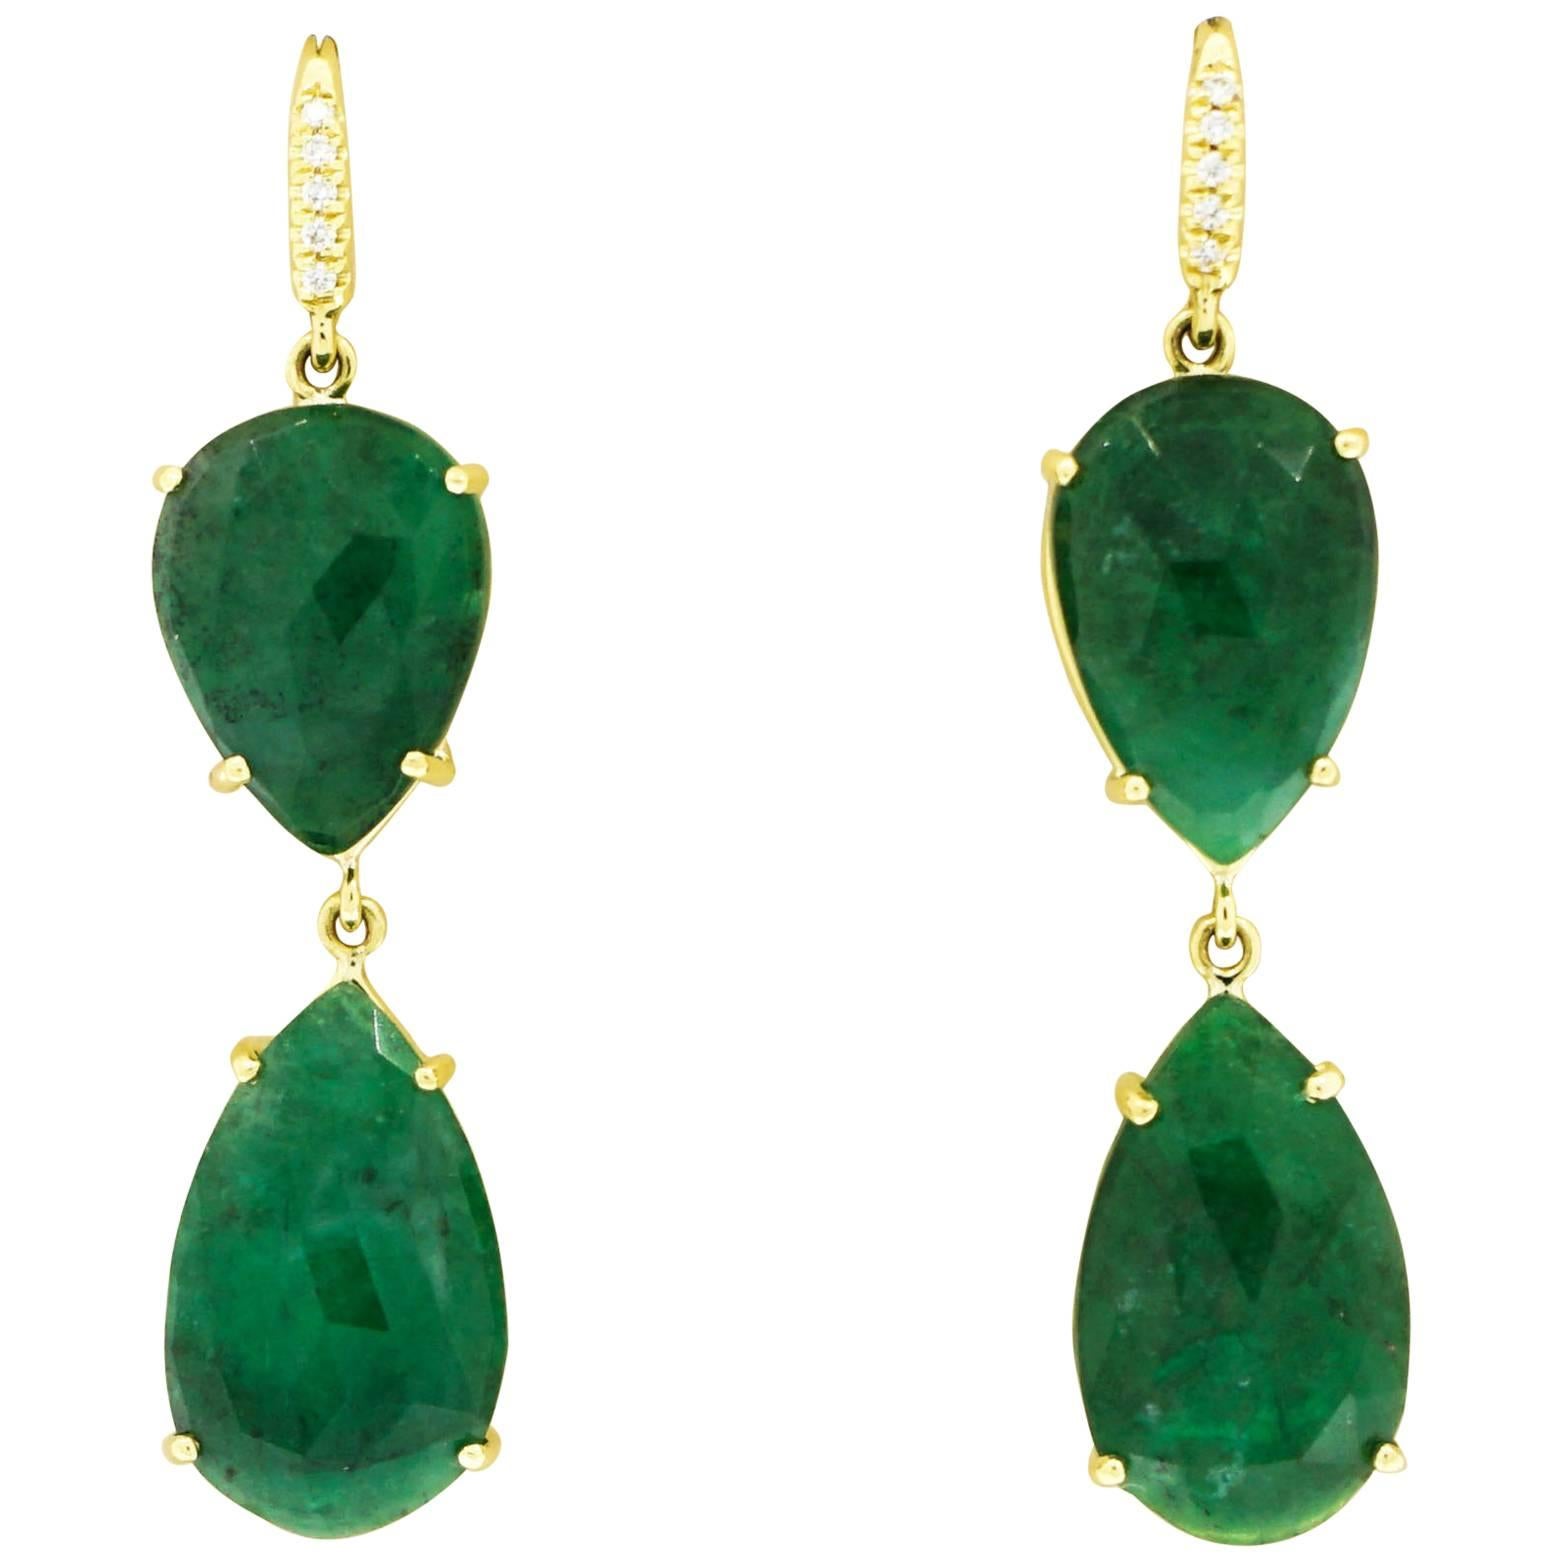 Pear Shaped Emerald and Diamond Drop Earrings by Lauren K